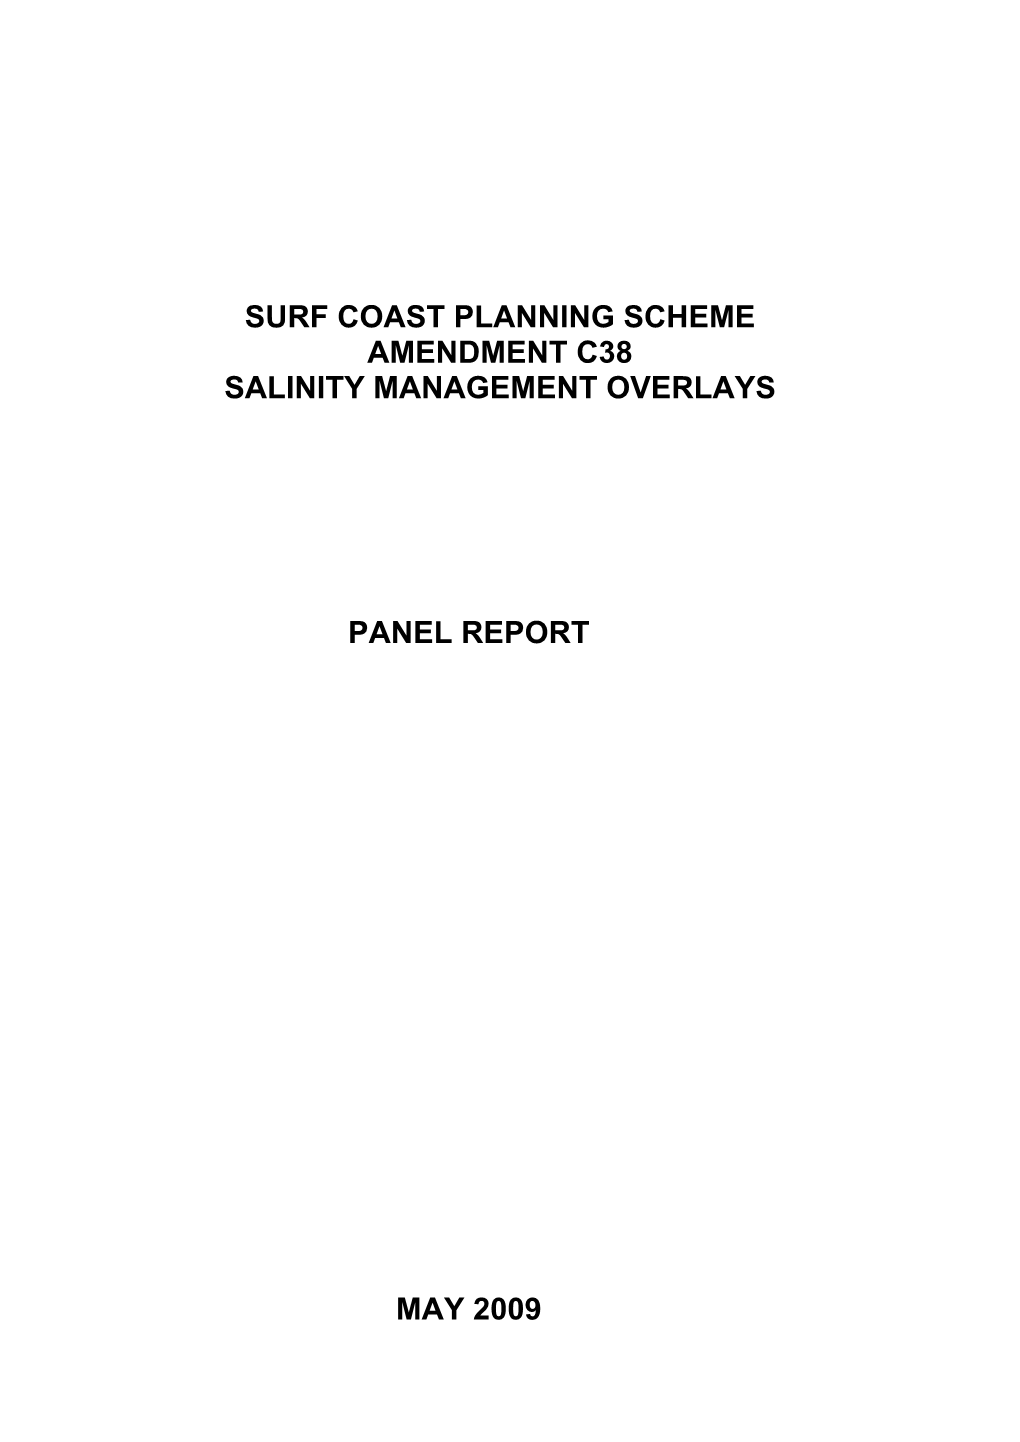 Surf Coast Planning Scheme Amendment C38 Salinity Management Overlays